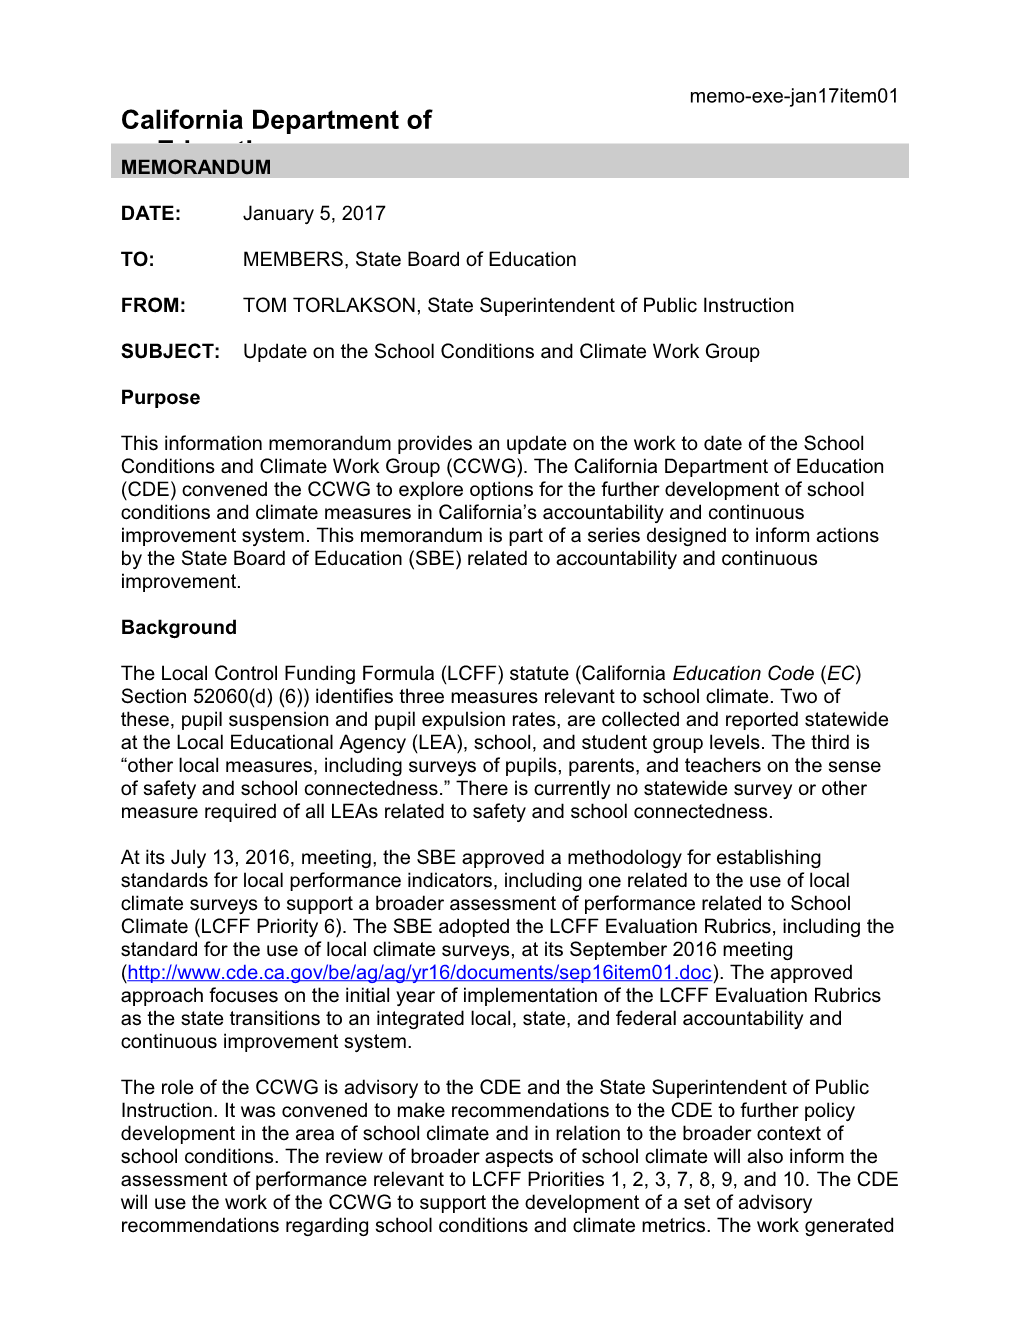 January 2017 Memo EXE Item 01 - Information Memorandum (CA State Board of Education) s1